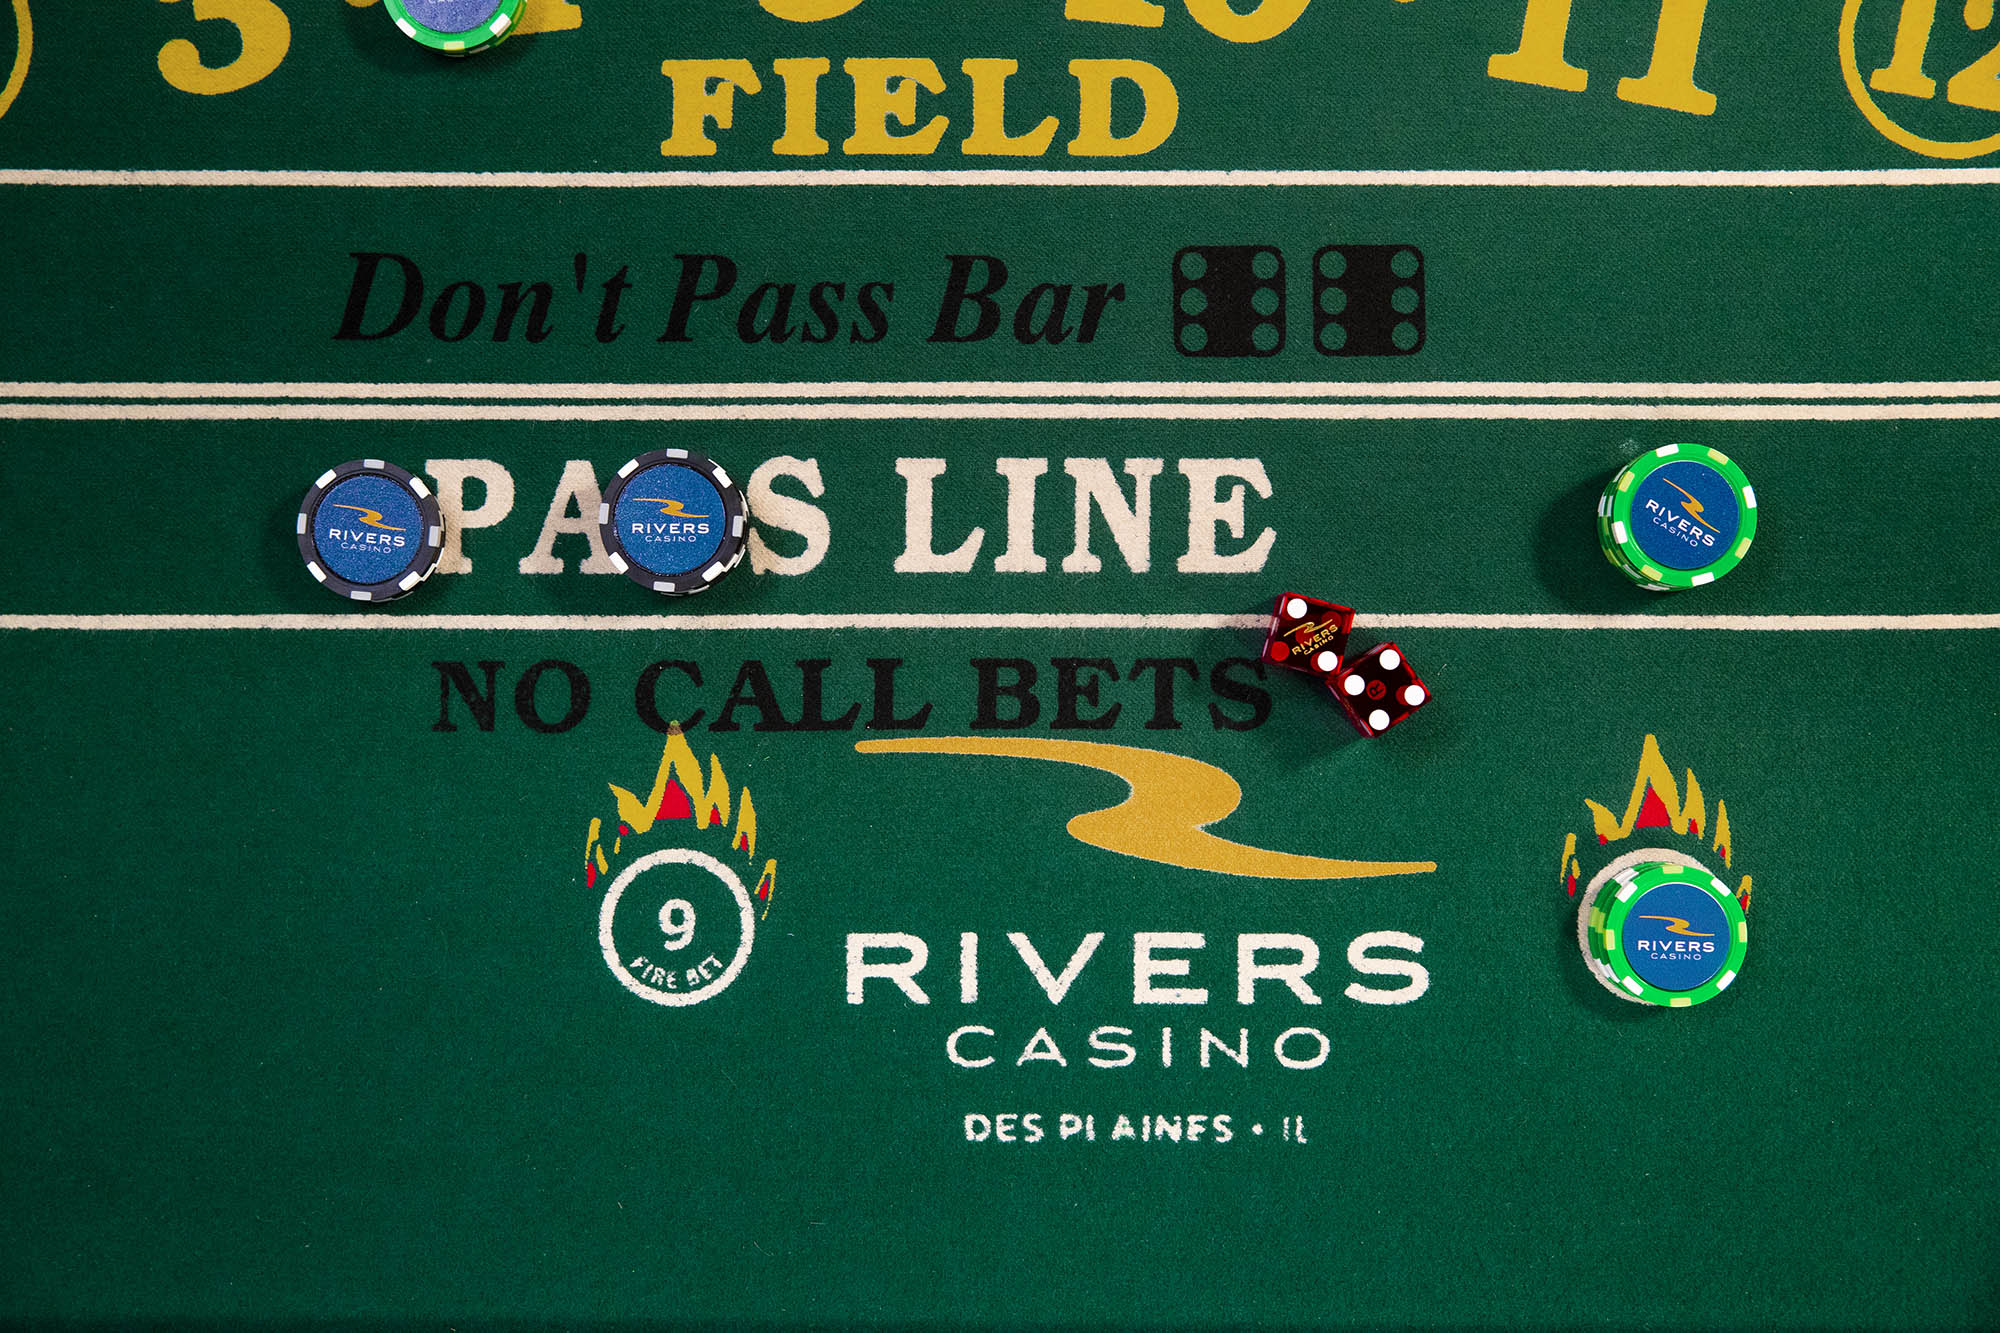 rivers casino des plaines il poker room